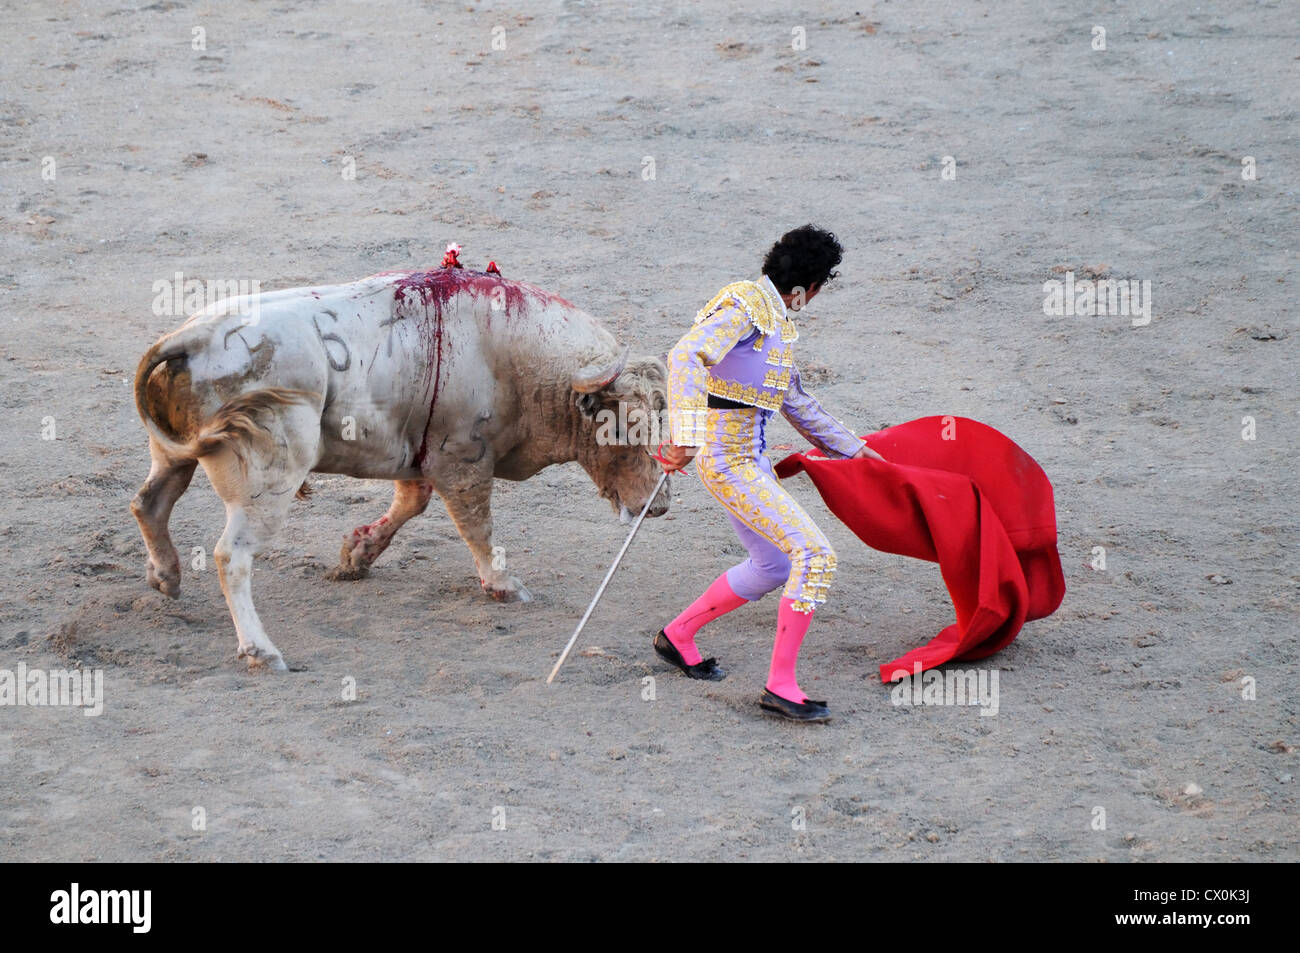 Matador con la espada y el capote rojo pequeño o muleta controla toro de corrida toros en arena romana Arles Francia Foto de stock